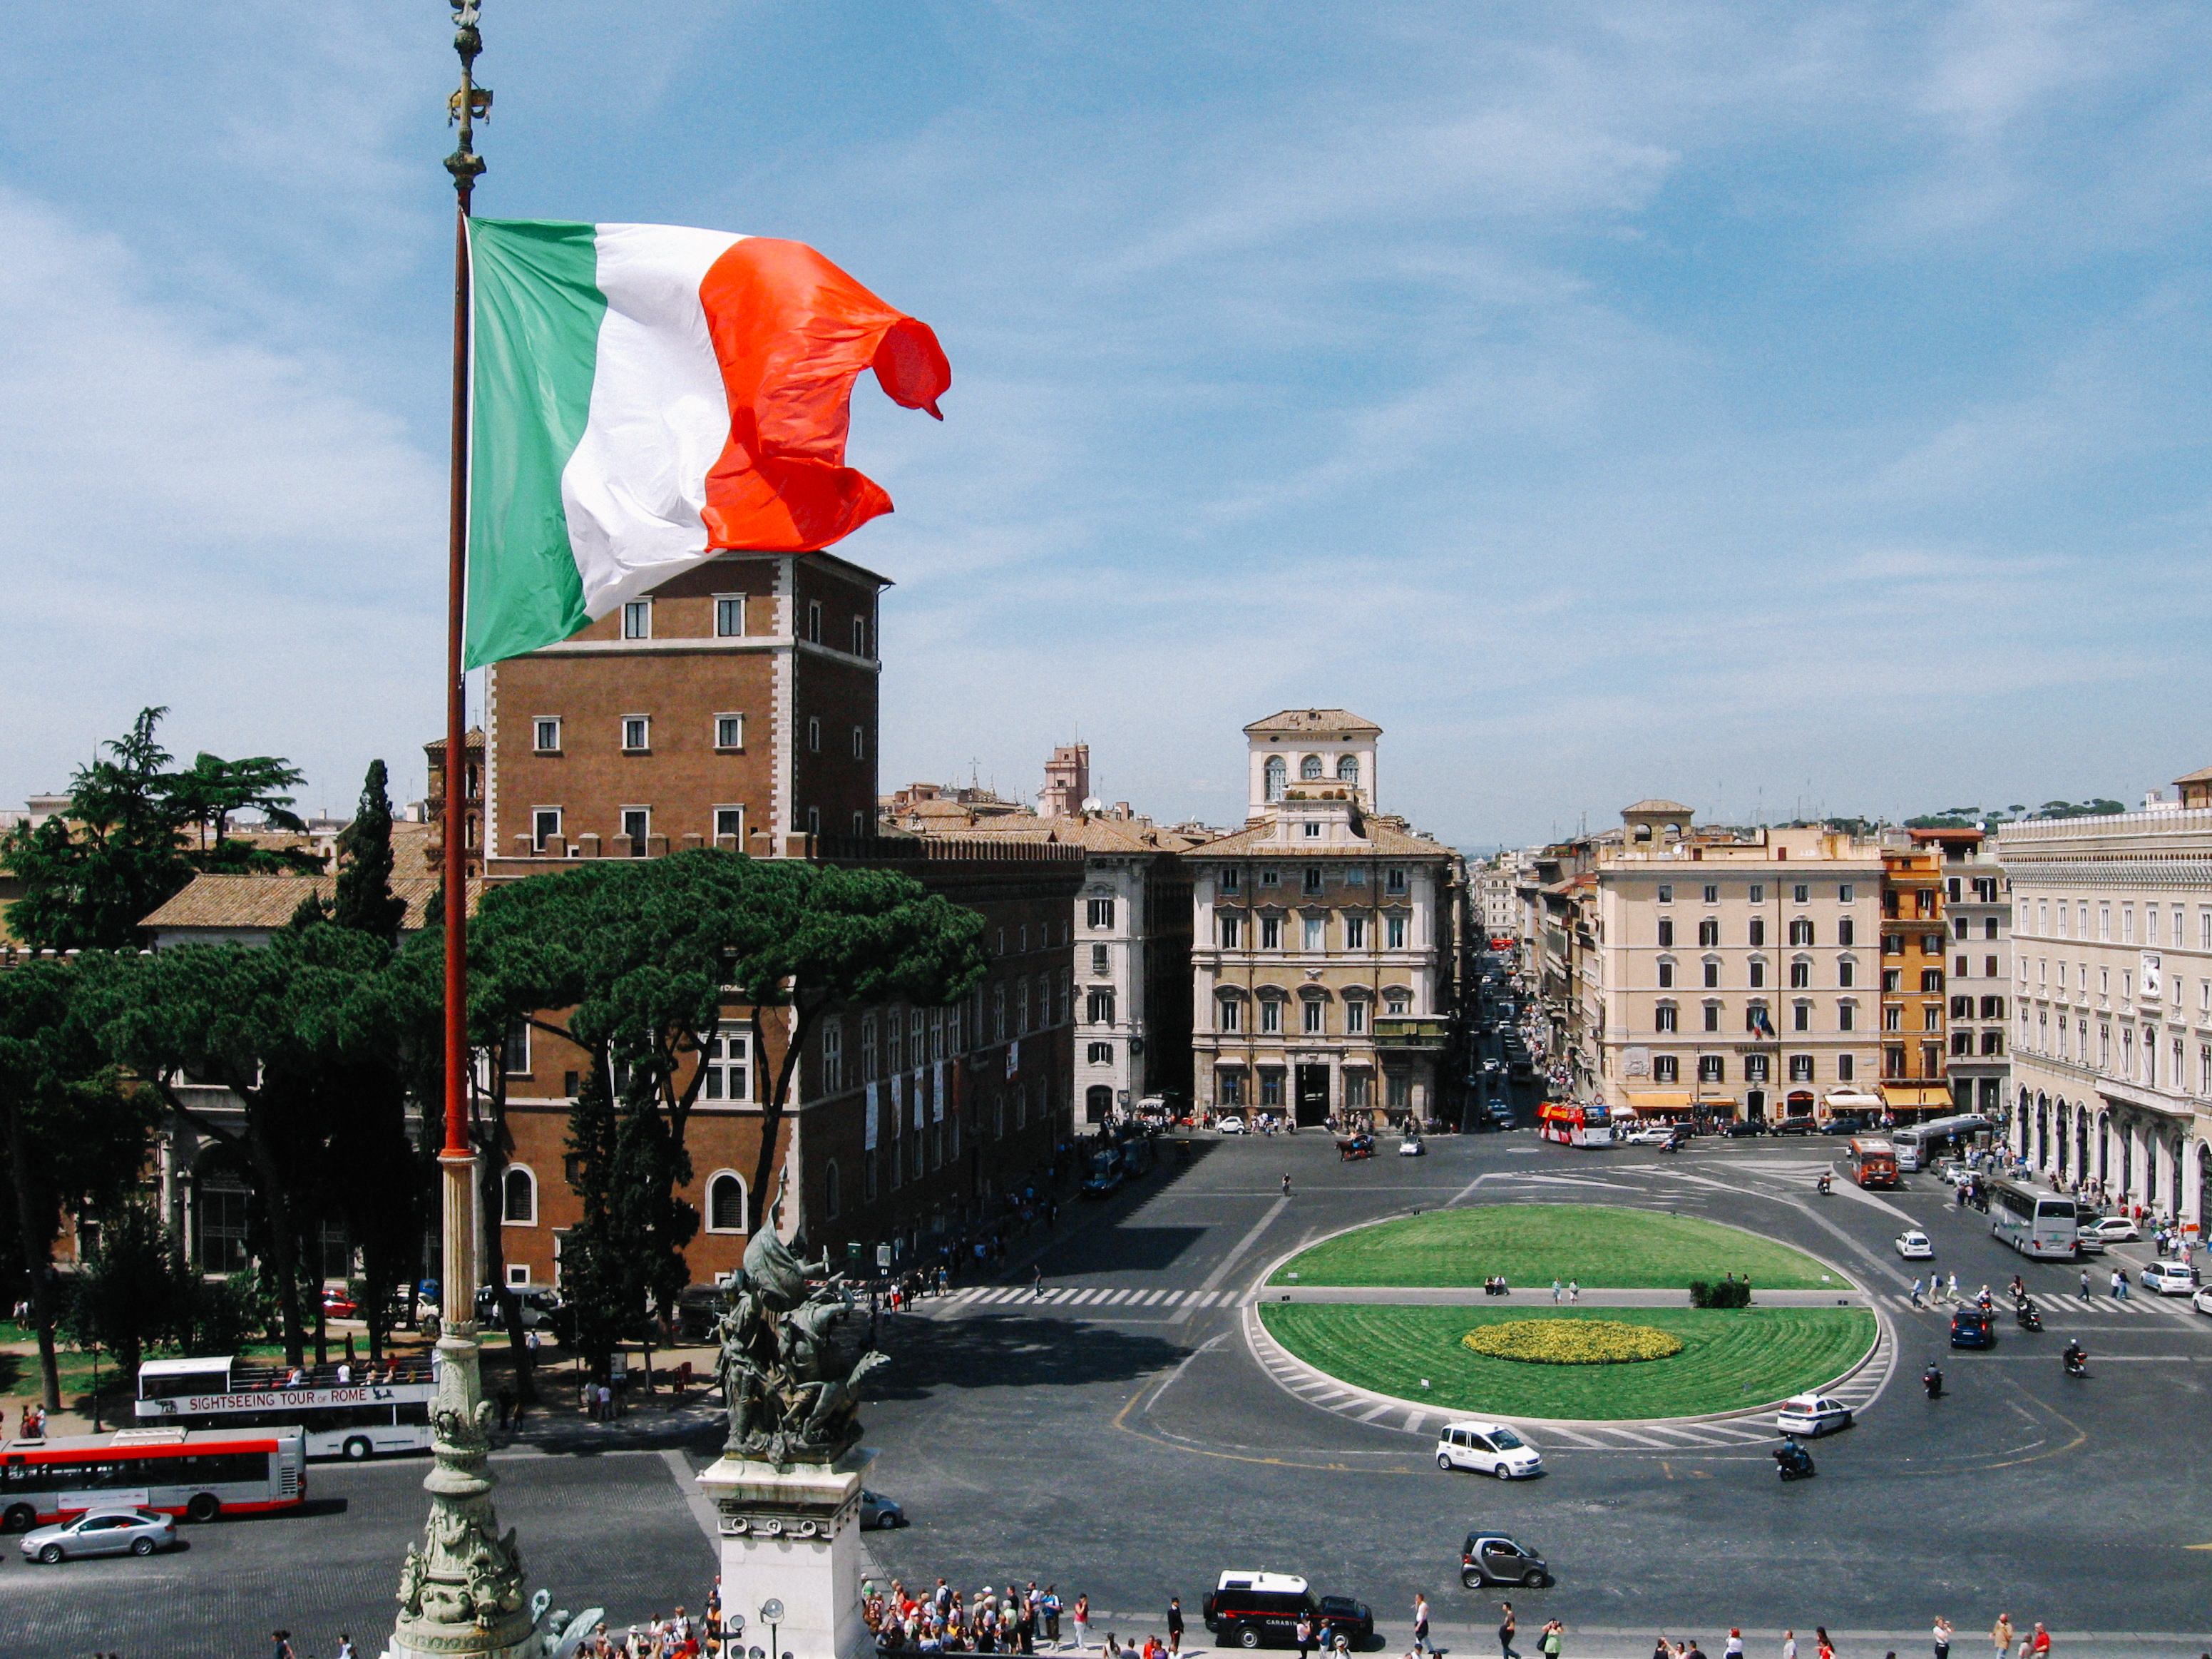 ローマの街並みと国旗 イタリア の写真素材 ぱくたそ